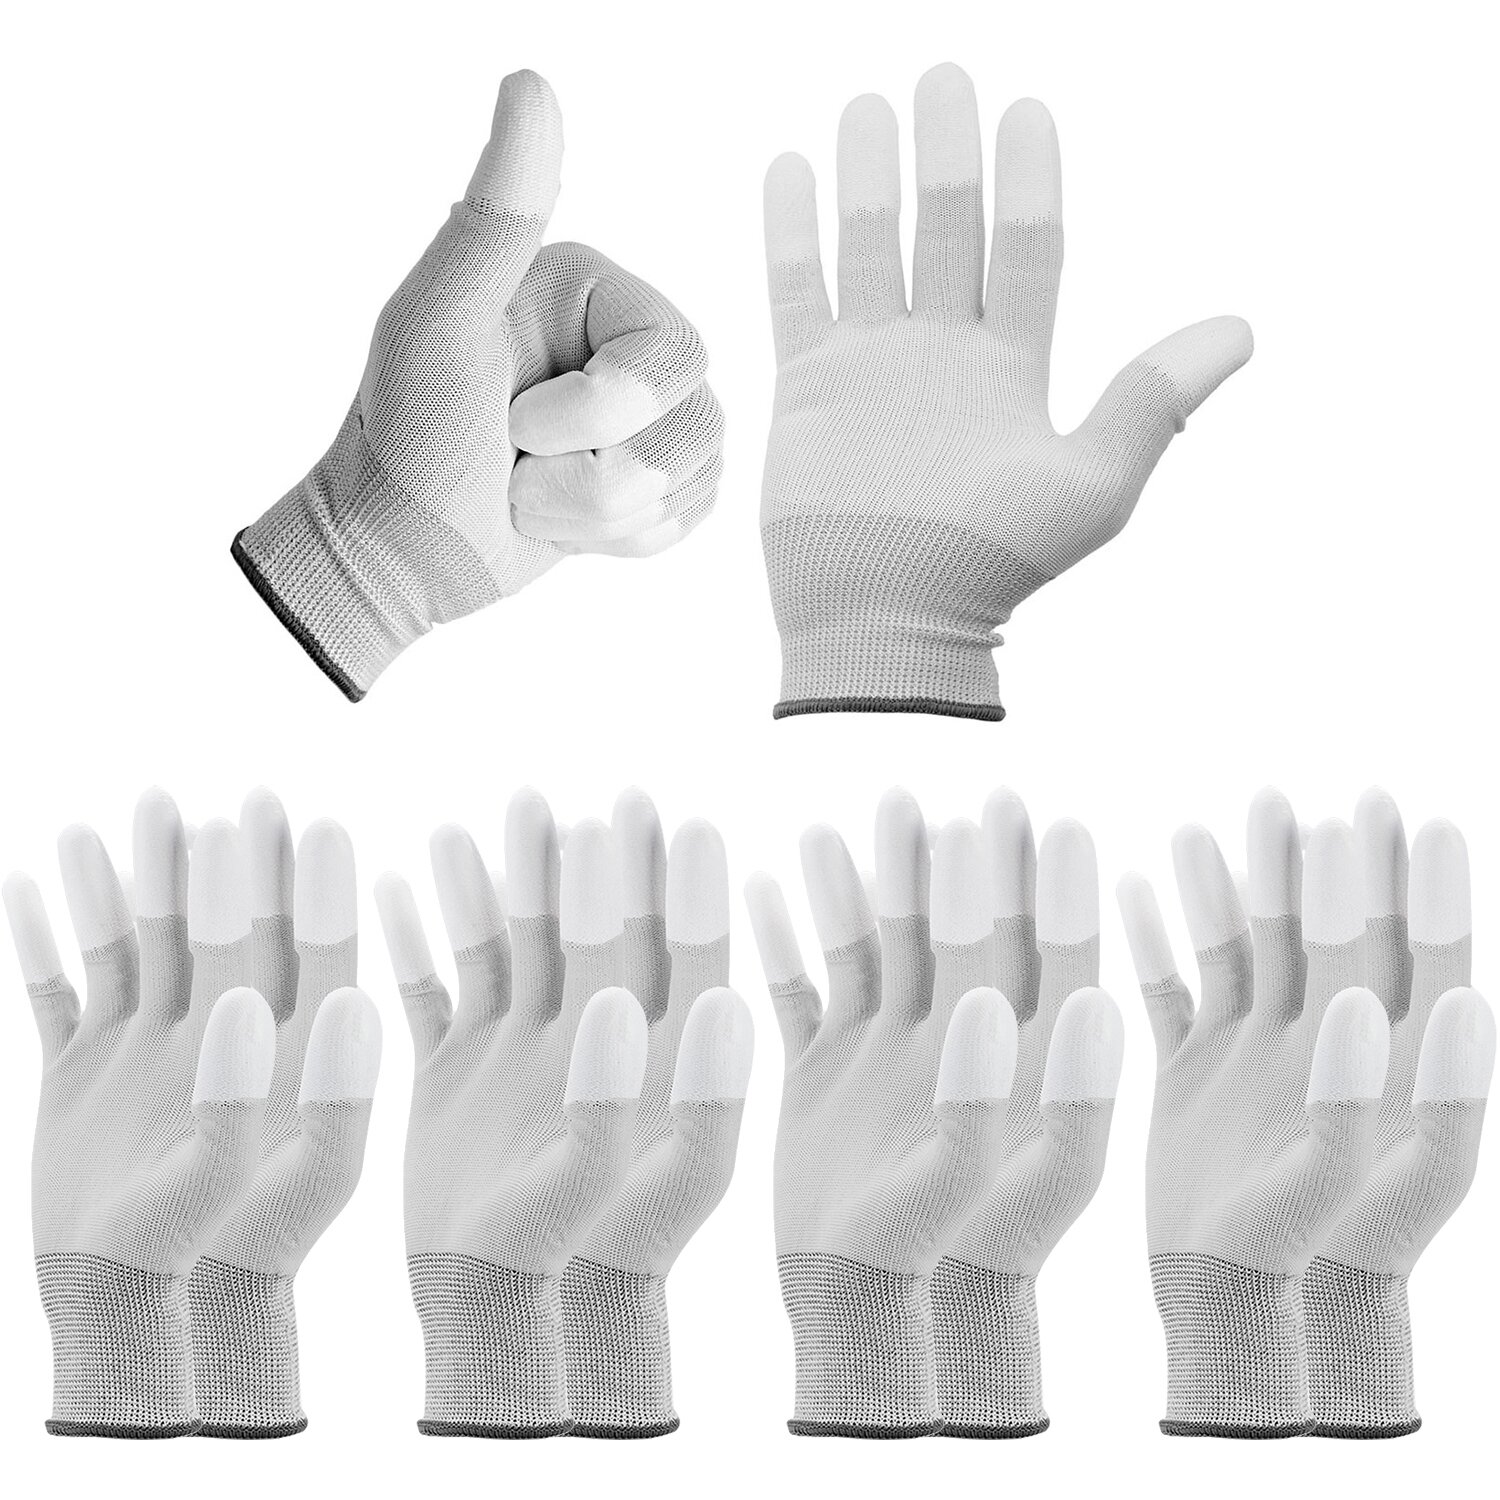 5x Paar Minadax ESD Antistatik Carbon Handschuhe f&uuml;r elektronische Arbeiten in Gr&ouml;&szlig;e M - ideal geeignet f&uuml;r Reiningung und Reparatur